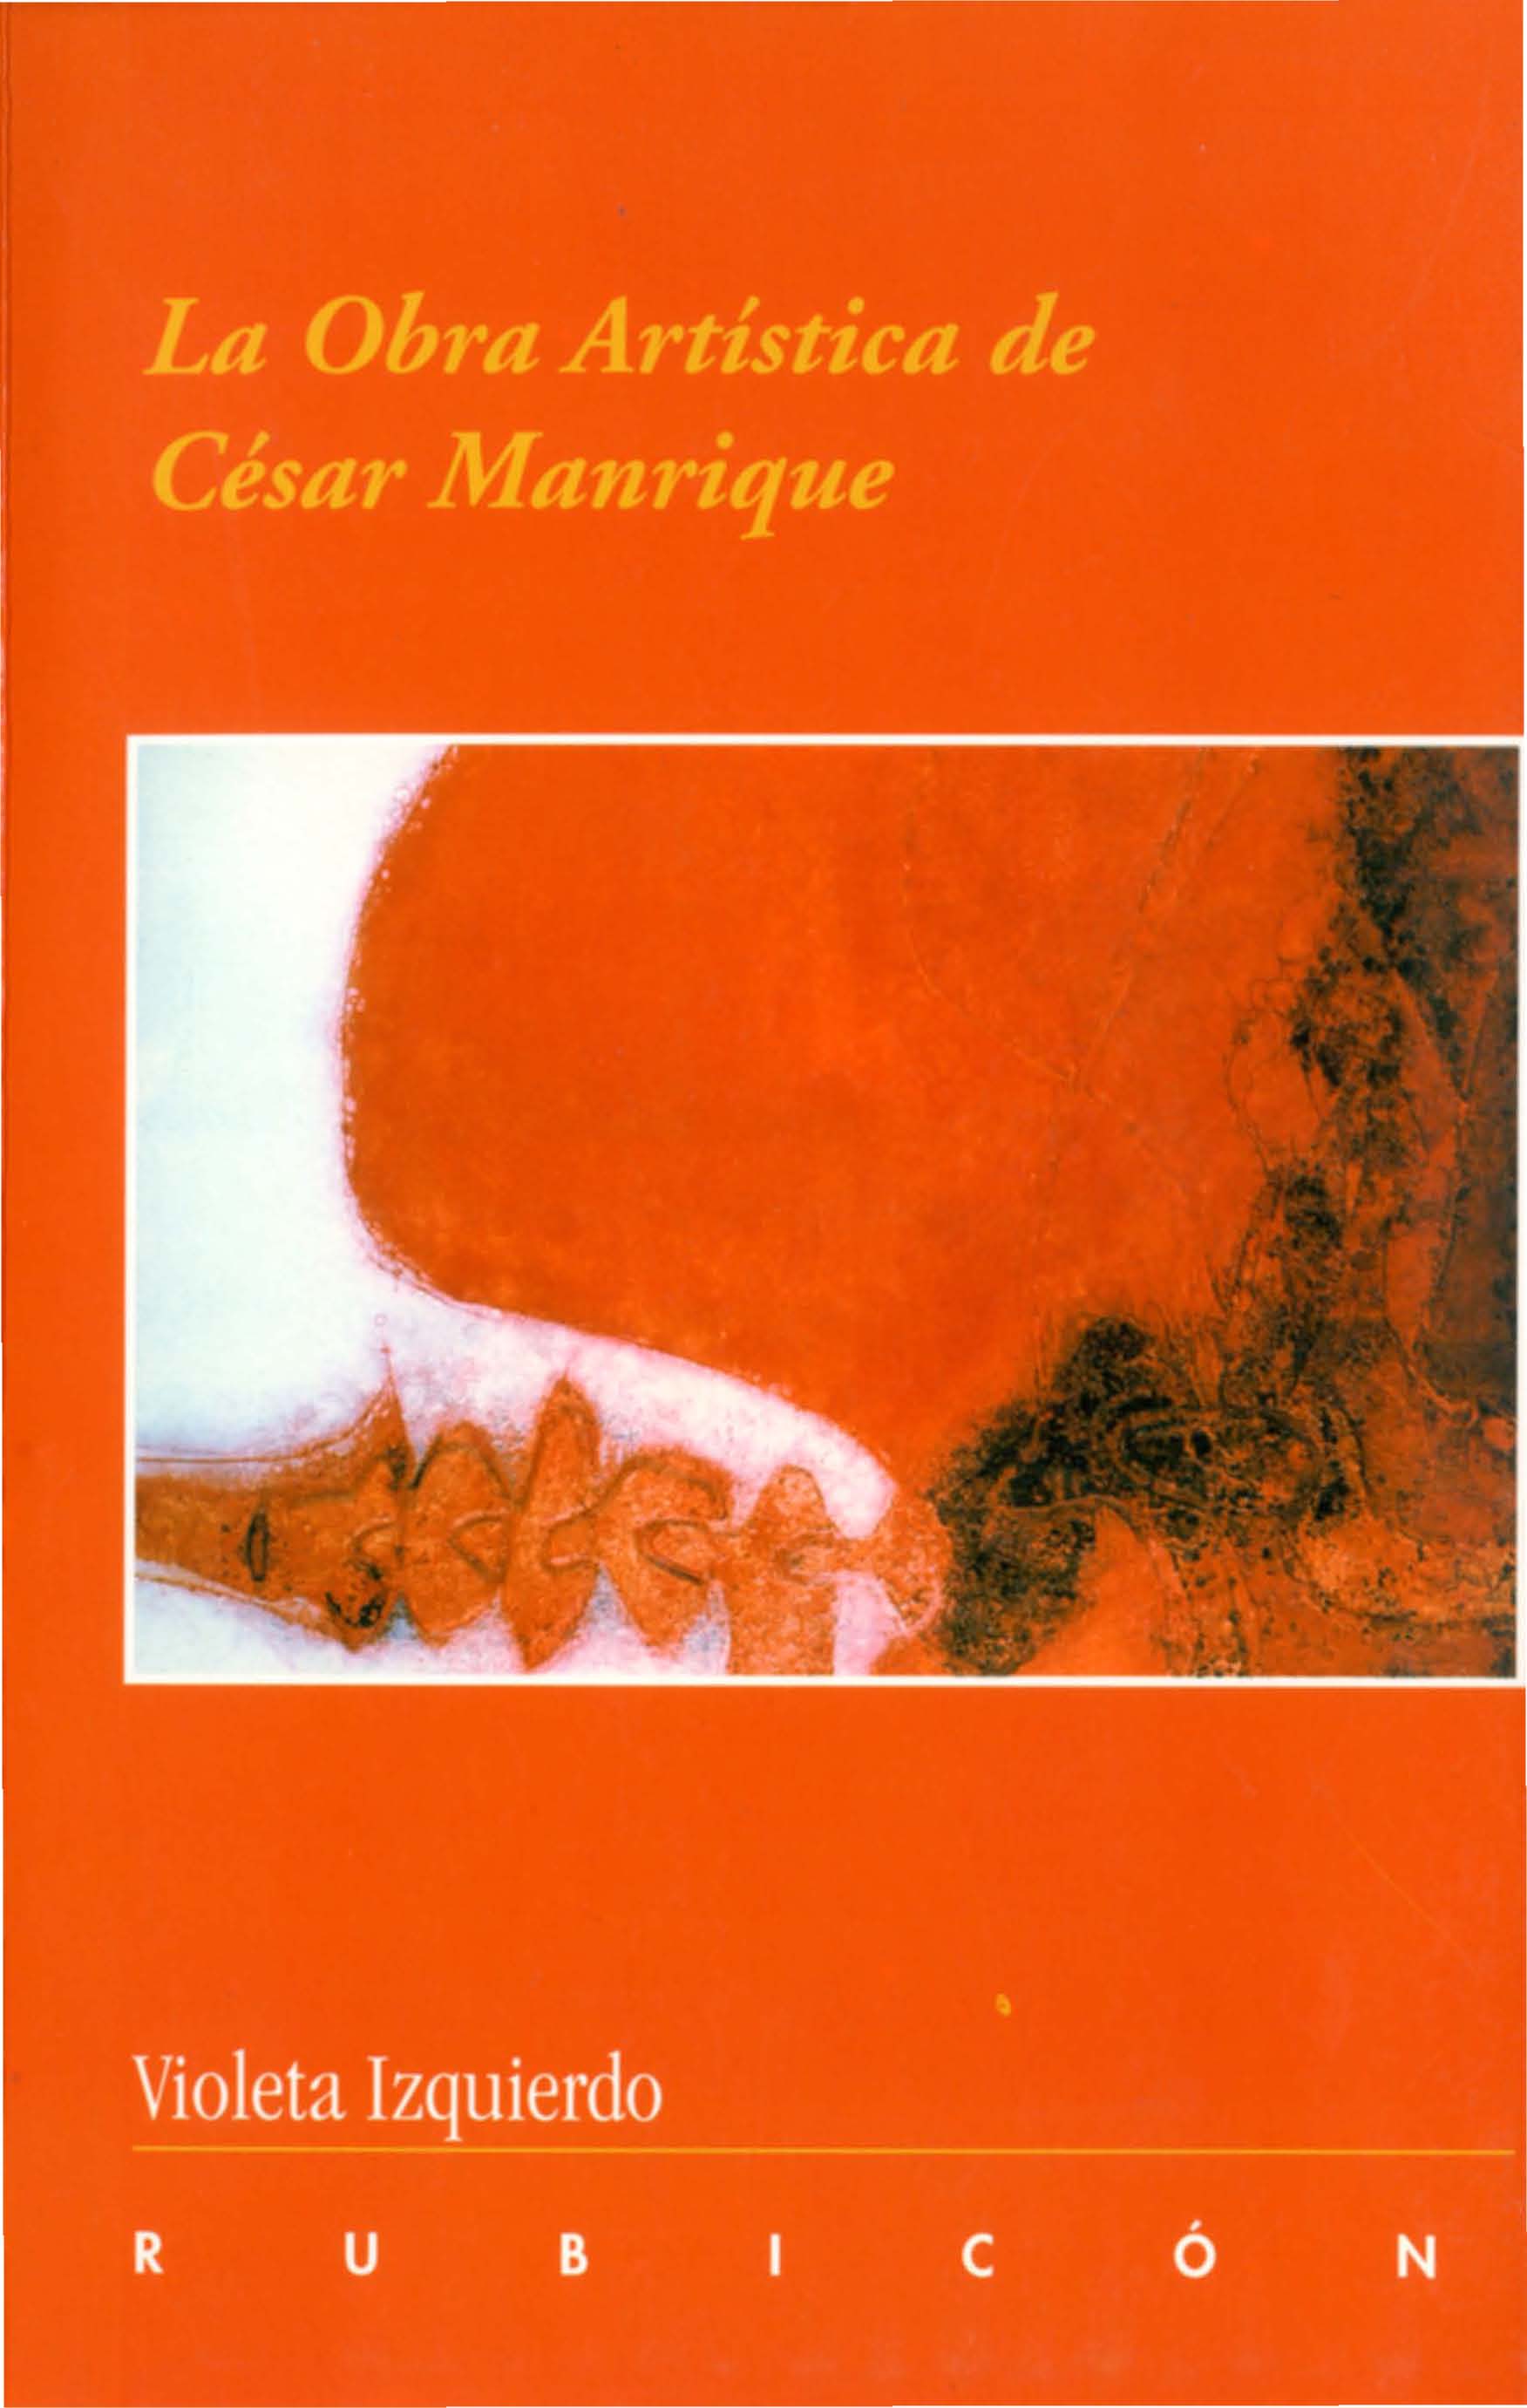 La obra artística de César Manrique